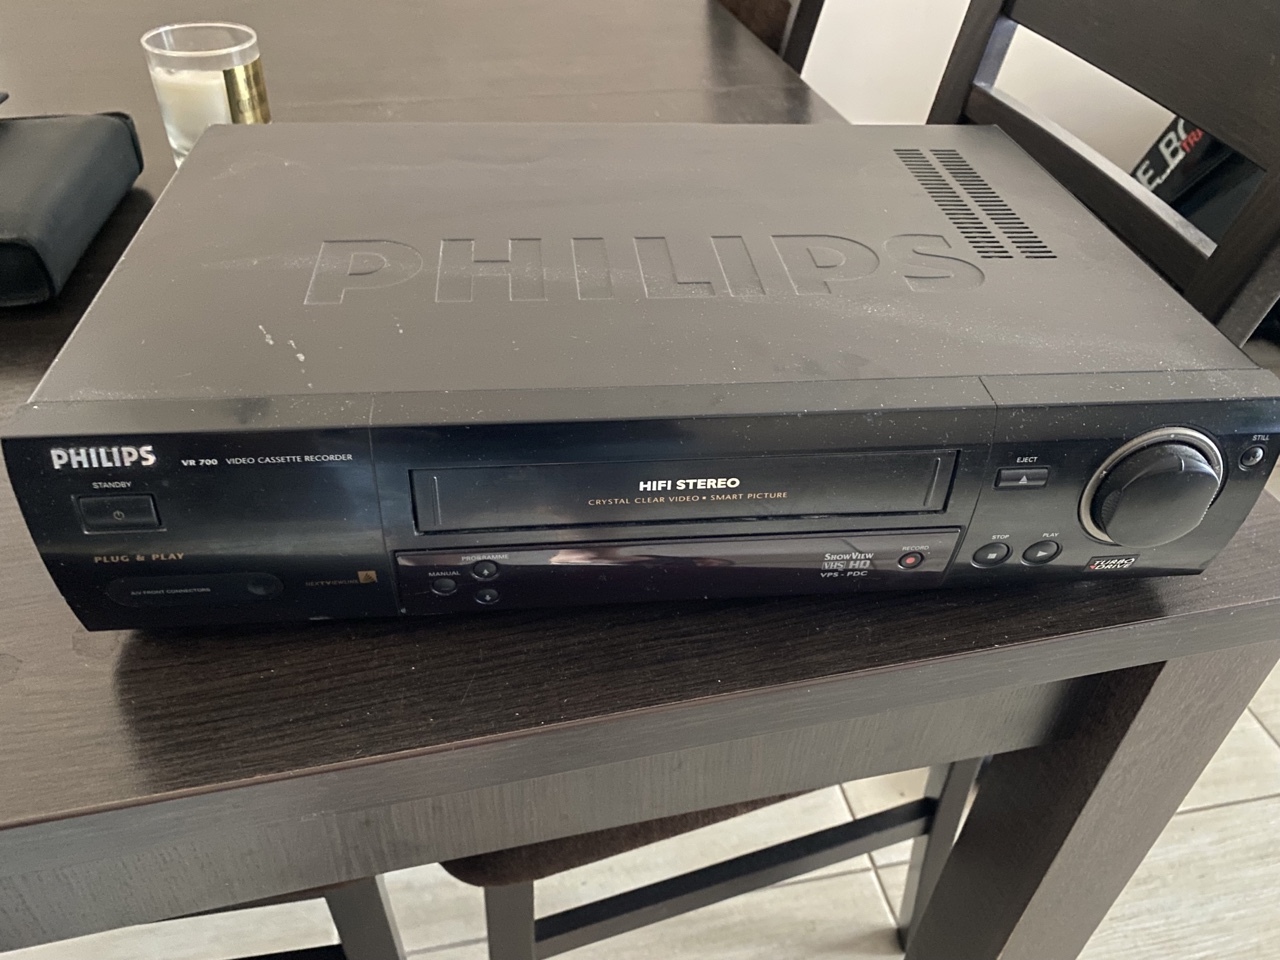 Magnetowid Video VHS Philips VR 700 uszkodzony | Nowy Tomyśl | Kup teraz na  Allegro Lokalnie